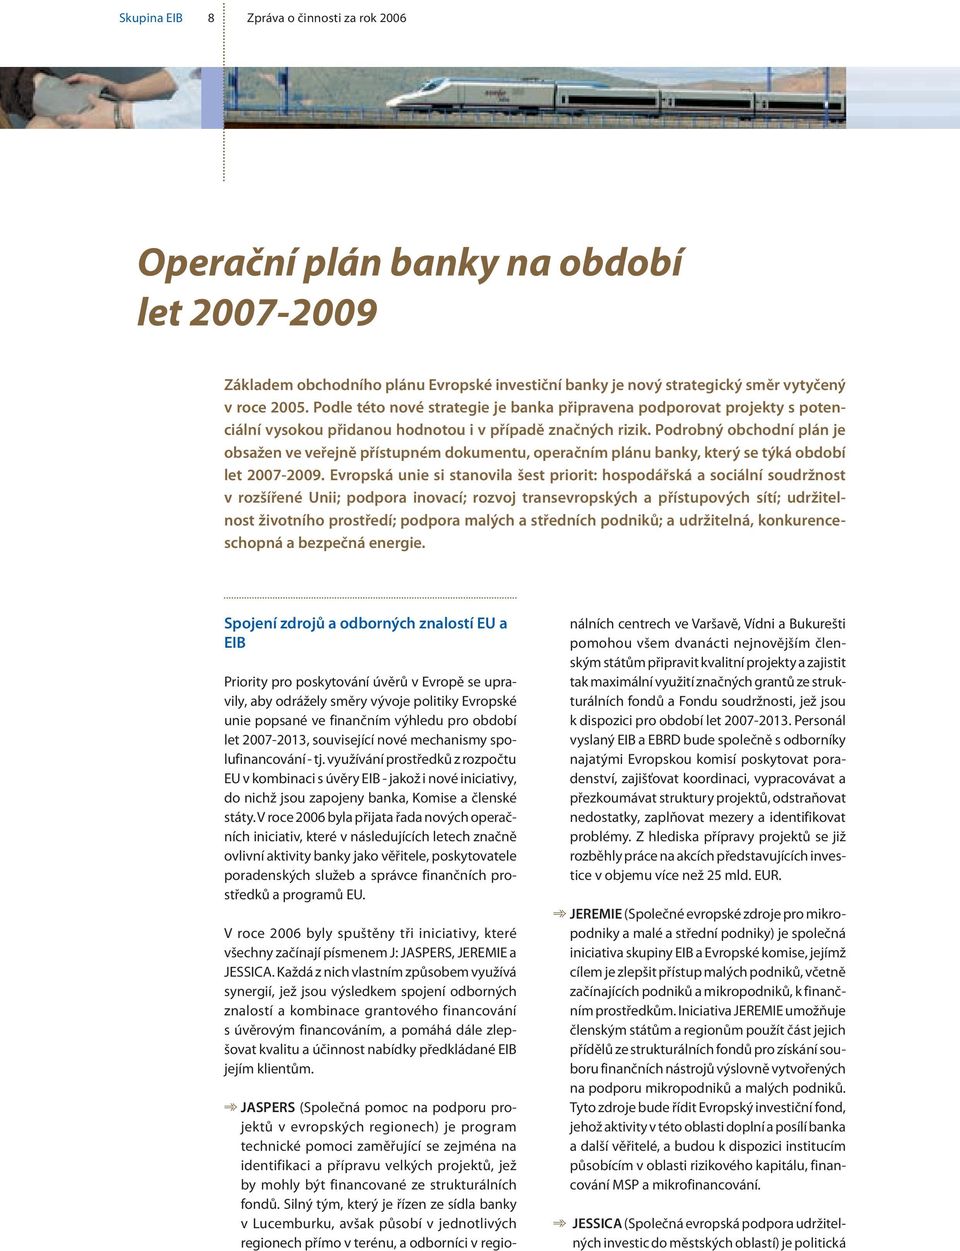 Podrobný obchodní plán je obsažen ve veřejně přístupném dokumentu, operačním plánu banky, který se týká období let 2007-2009.